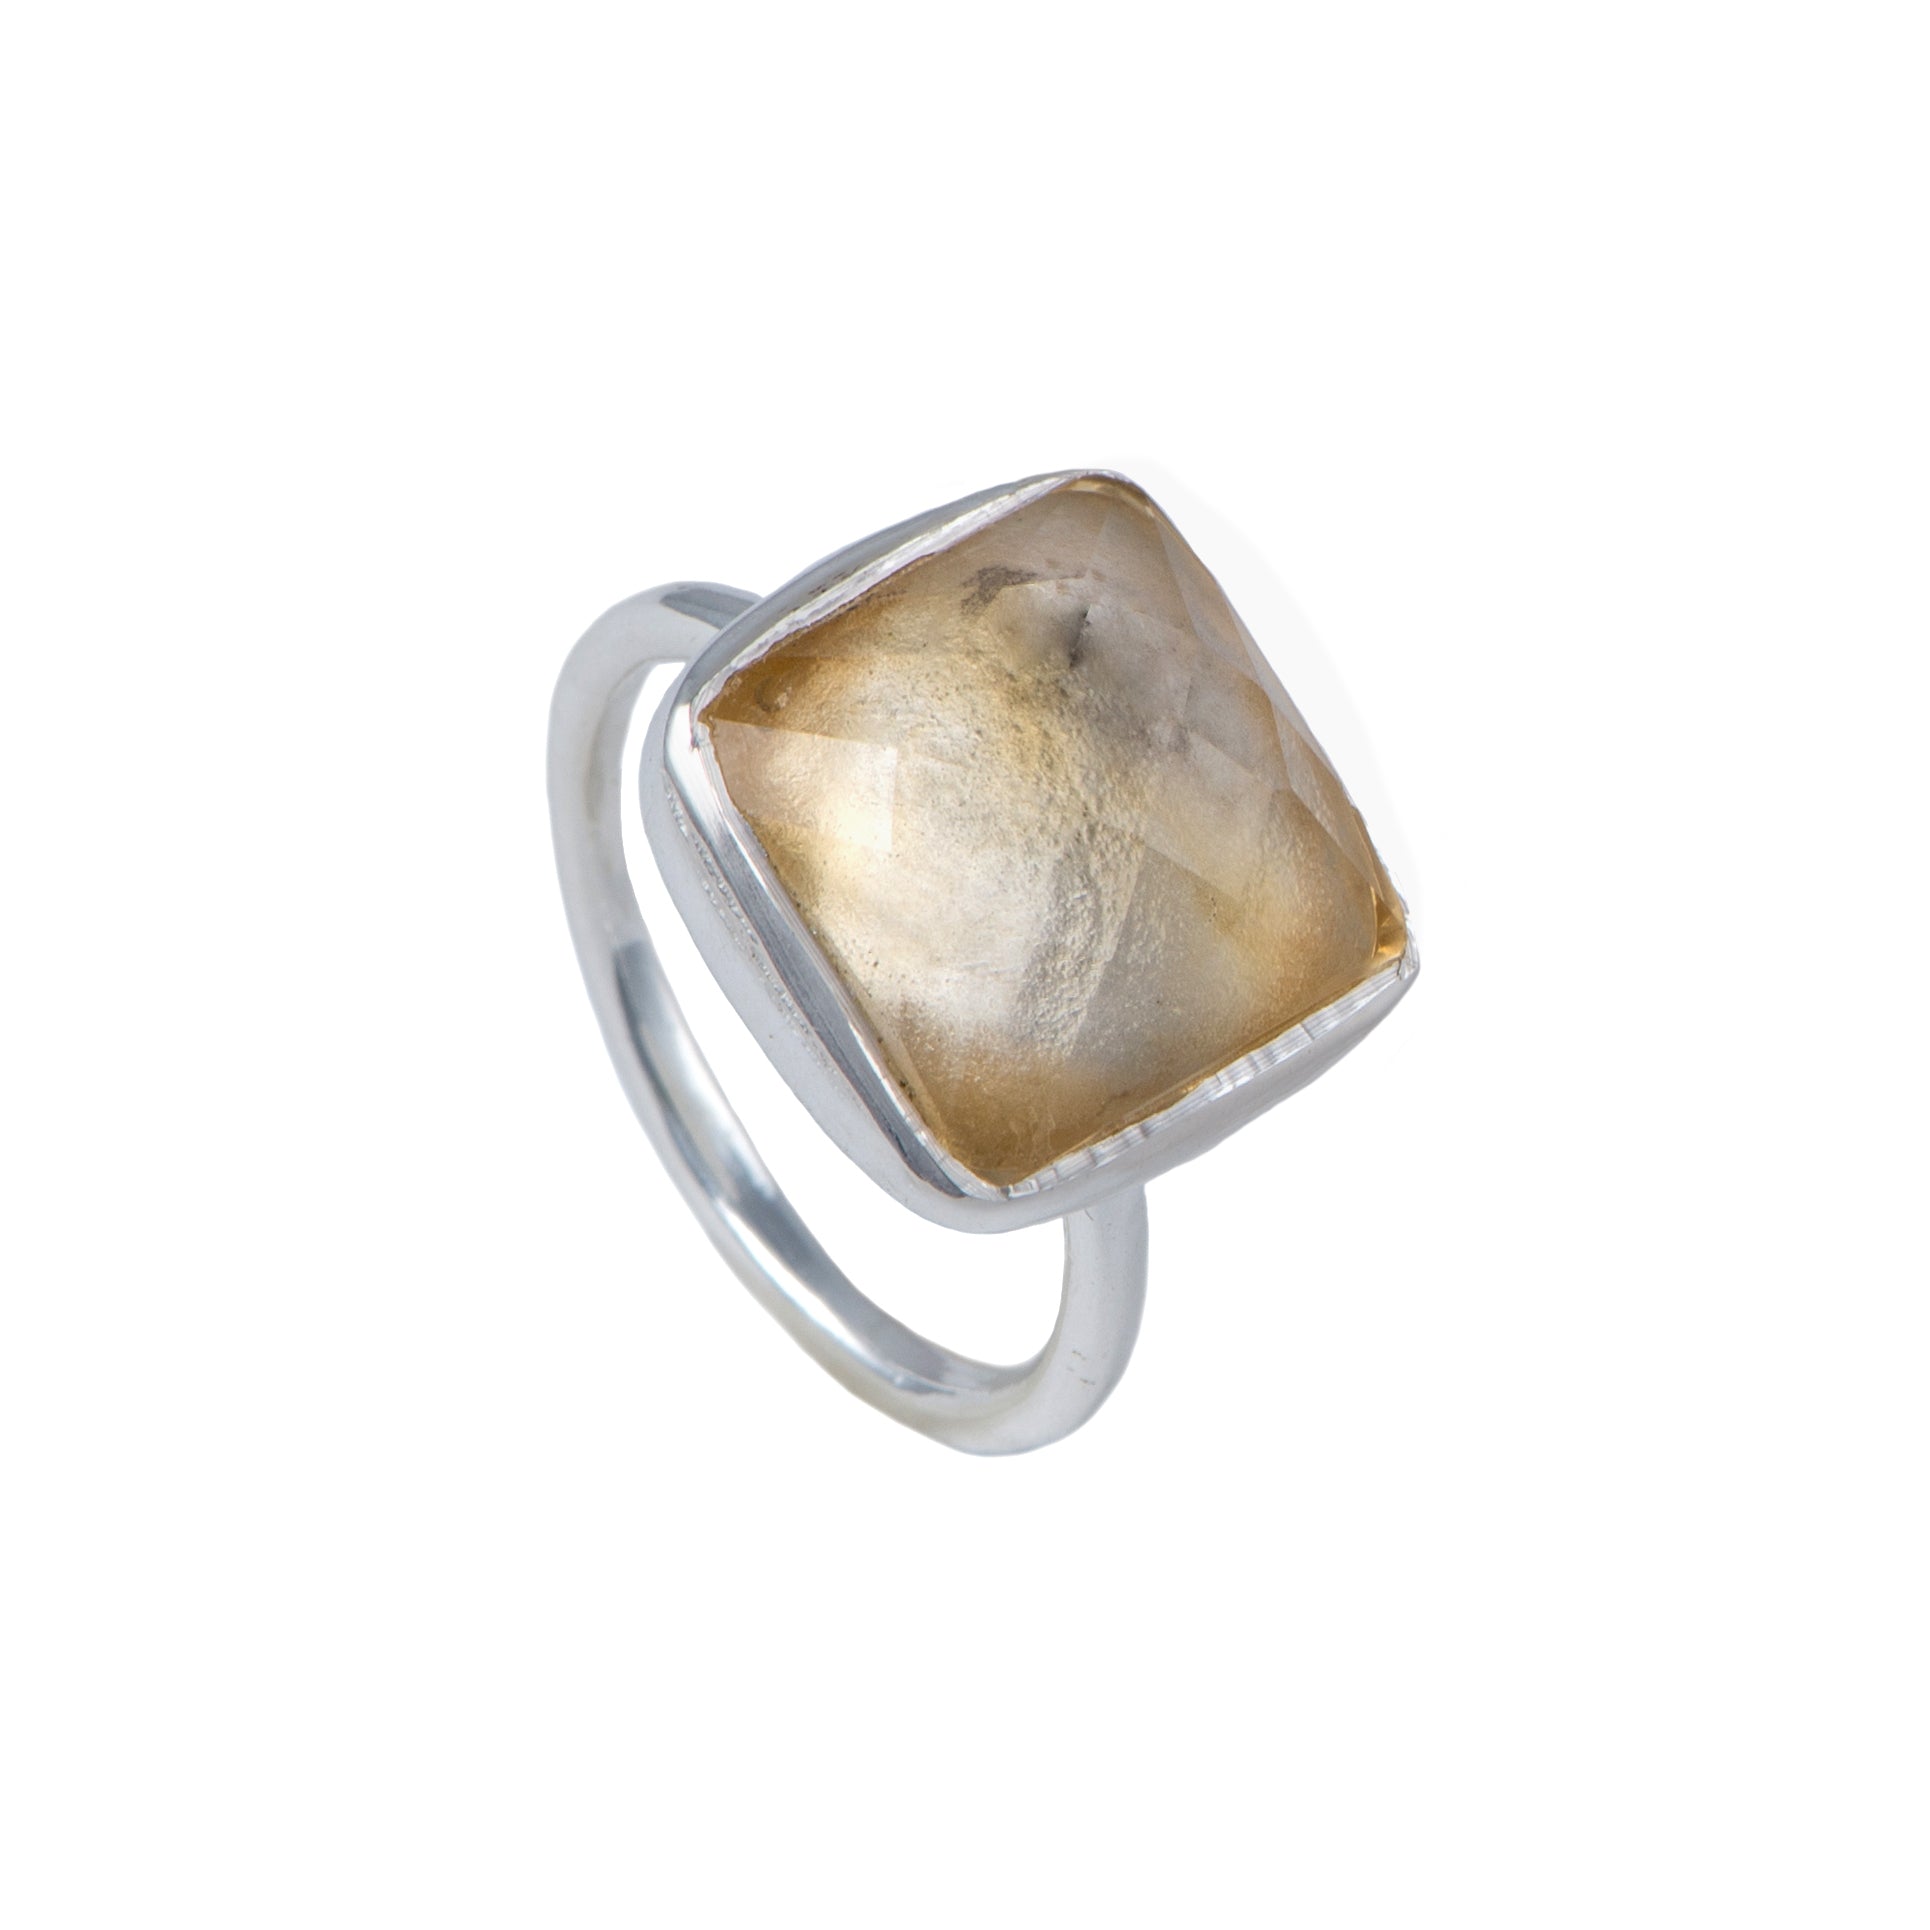 Silver Ring with Square Semiprecious Stone - Citrine